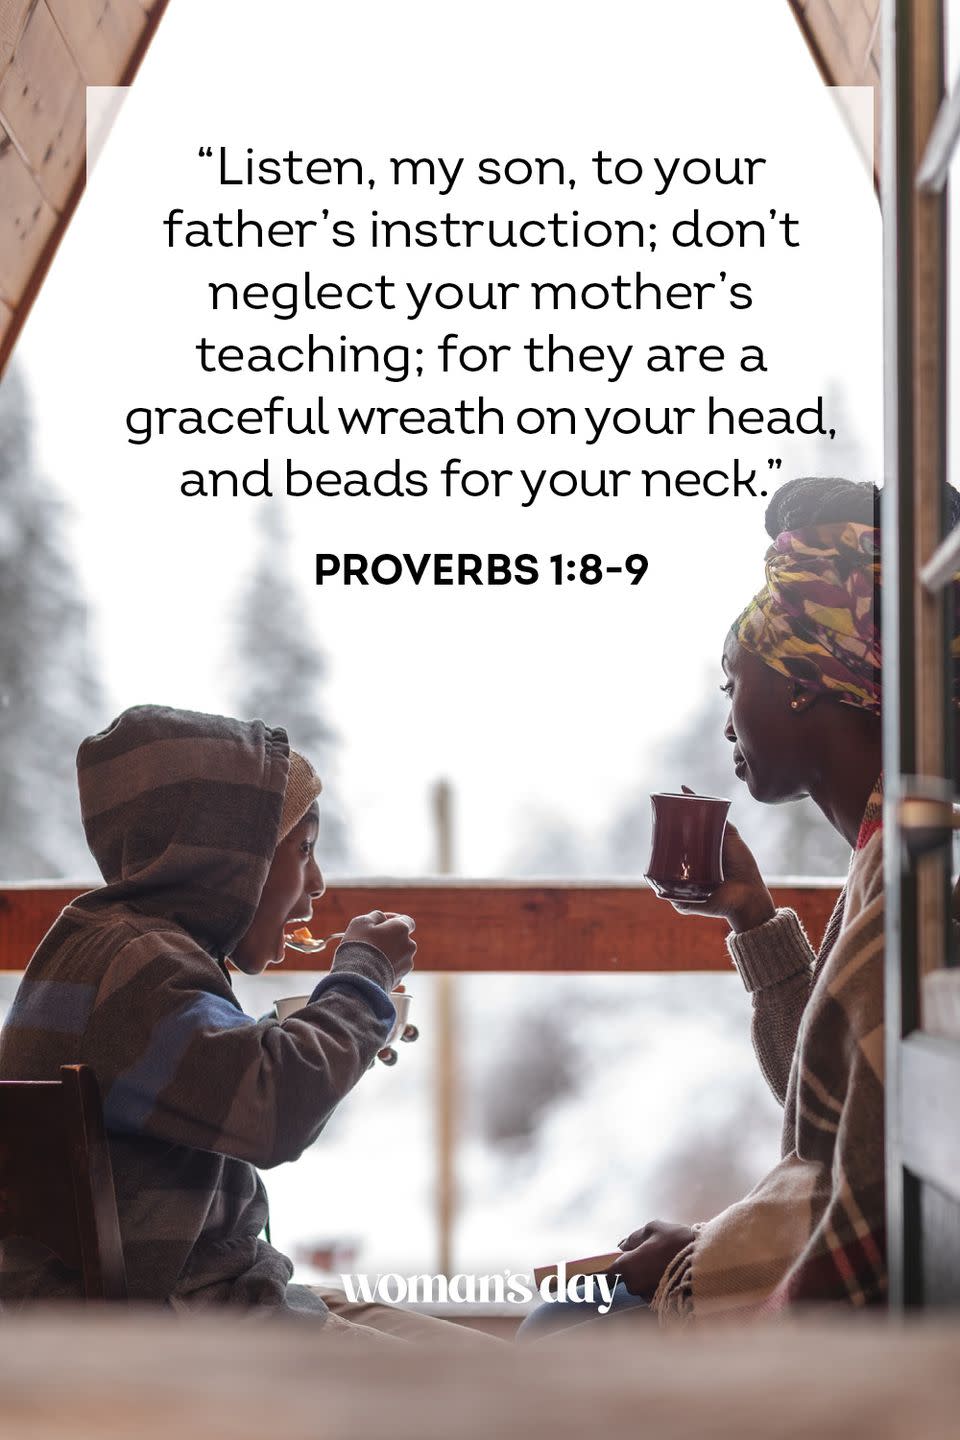 18) Proverbs 1:8-9